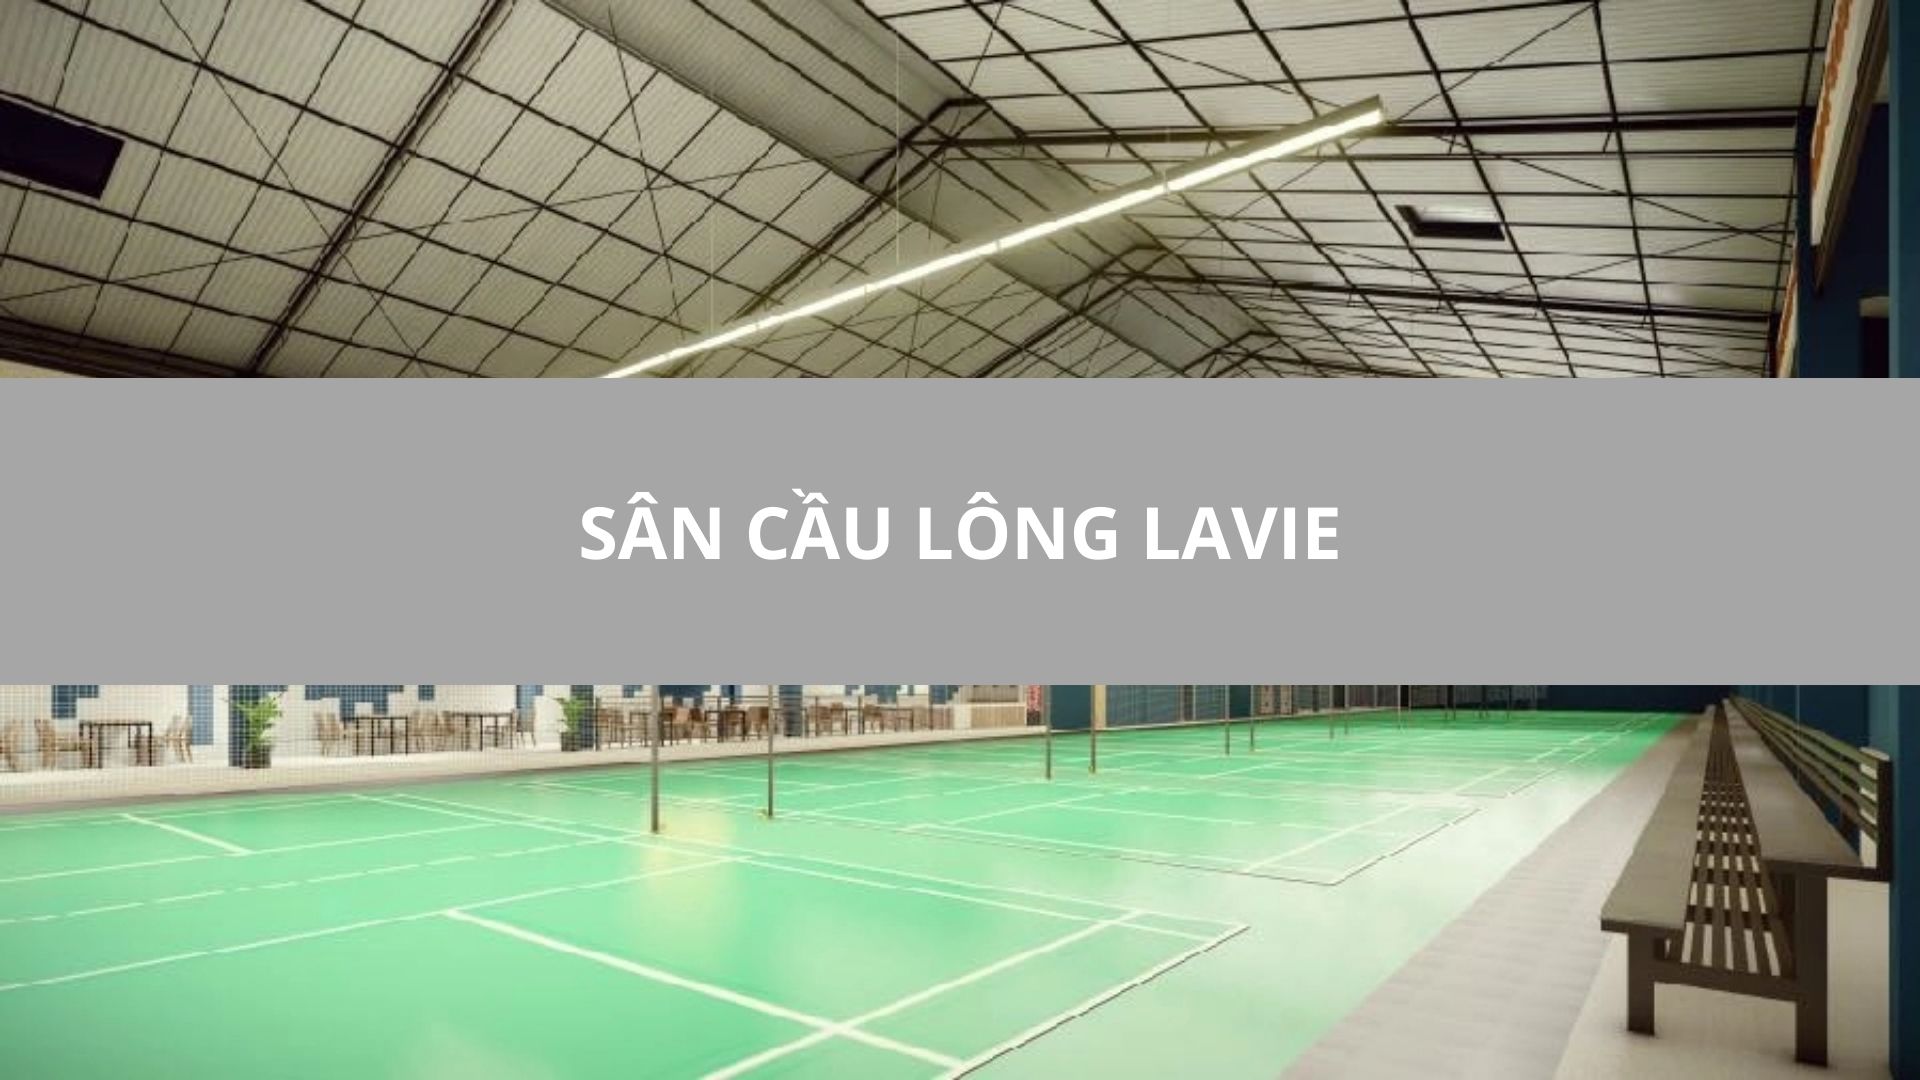 Sân cầu lông Lavie, Quận 4, Thành phố Hồ Chí Minh